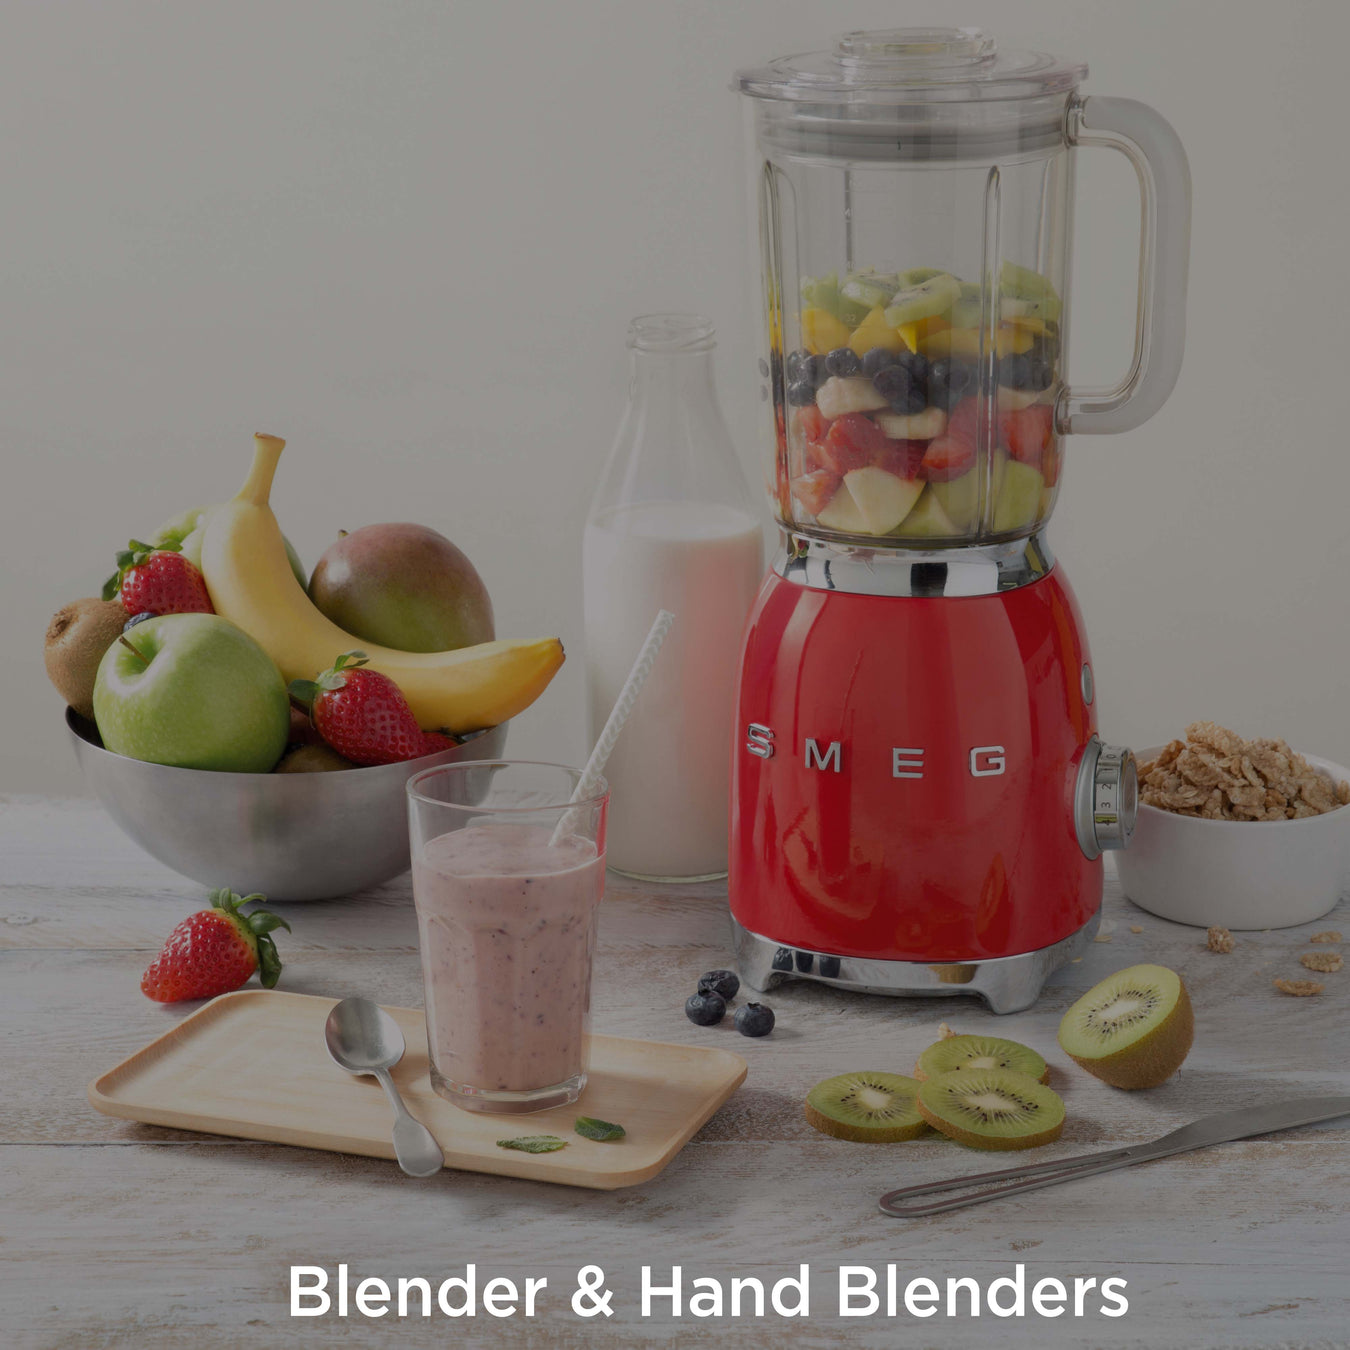 Smeg Blender & Hand Blenders